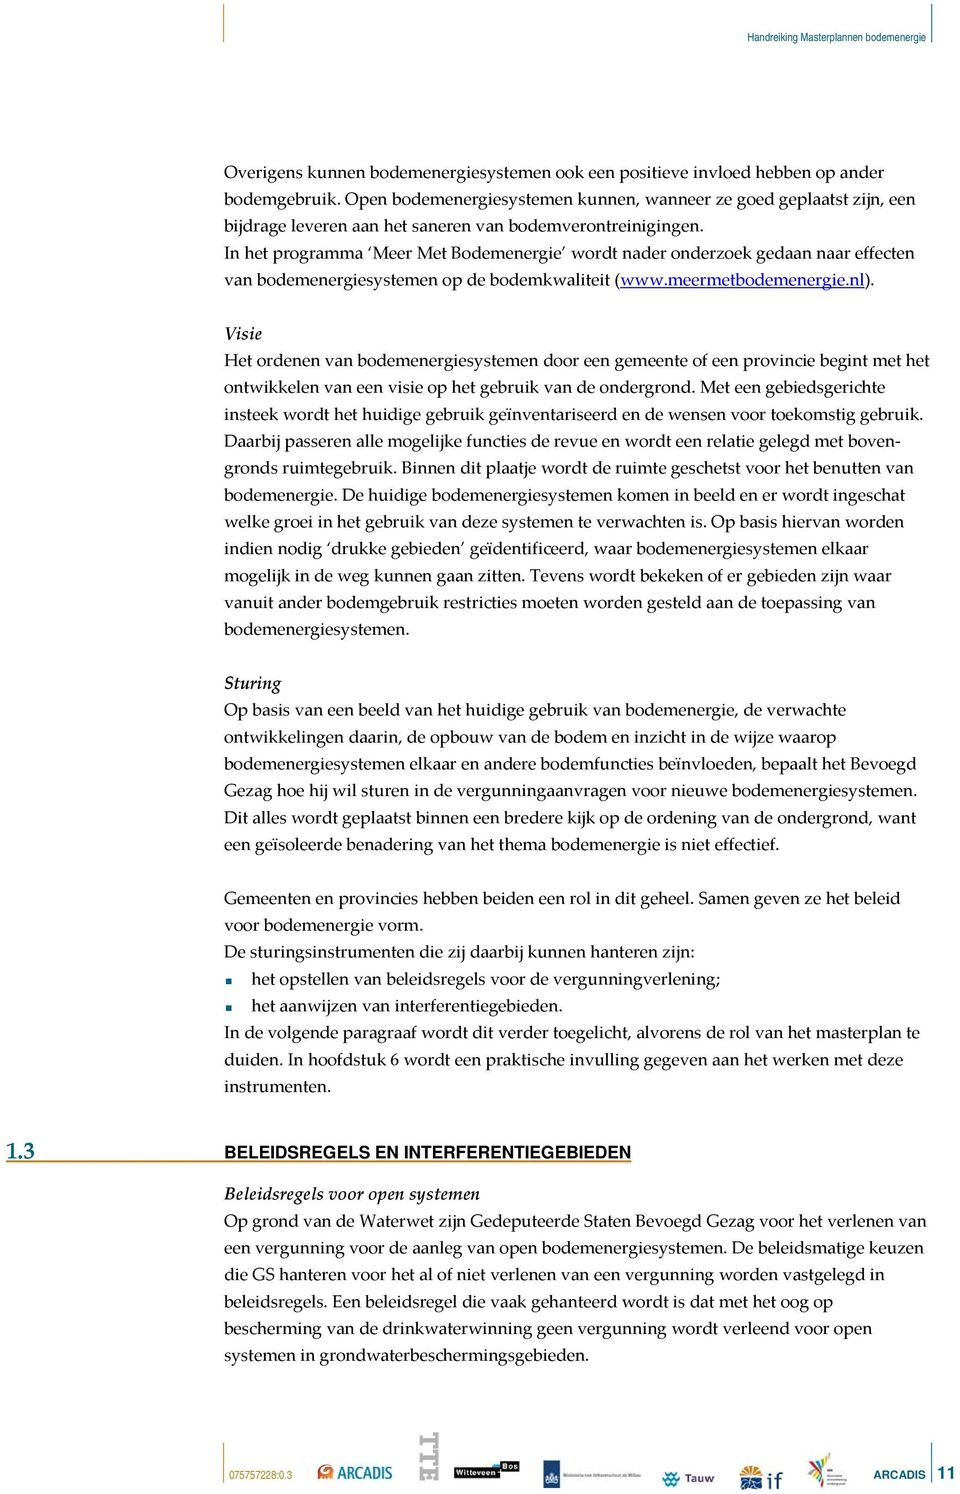 In het programma Meer Met Bodemenergie wordt nader onderzoek gedaan naar effecten van bodemenergiesystemen op de bodemkwaliteit (www.meermetbodemenergie.nl).